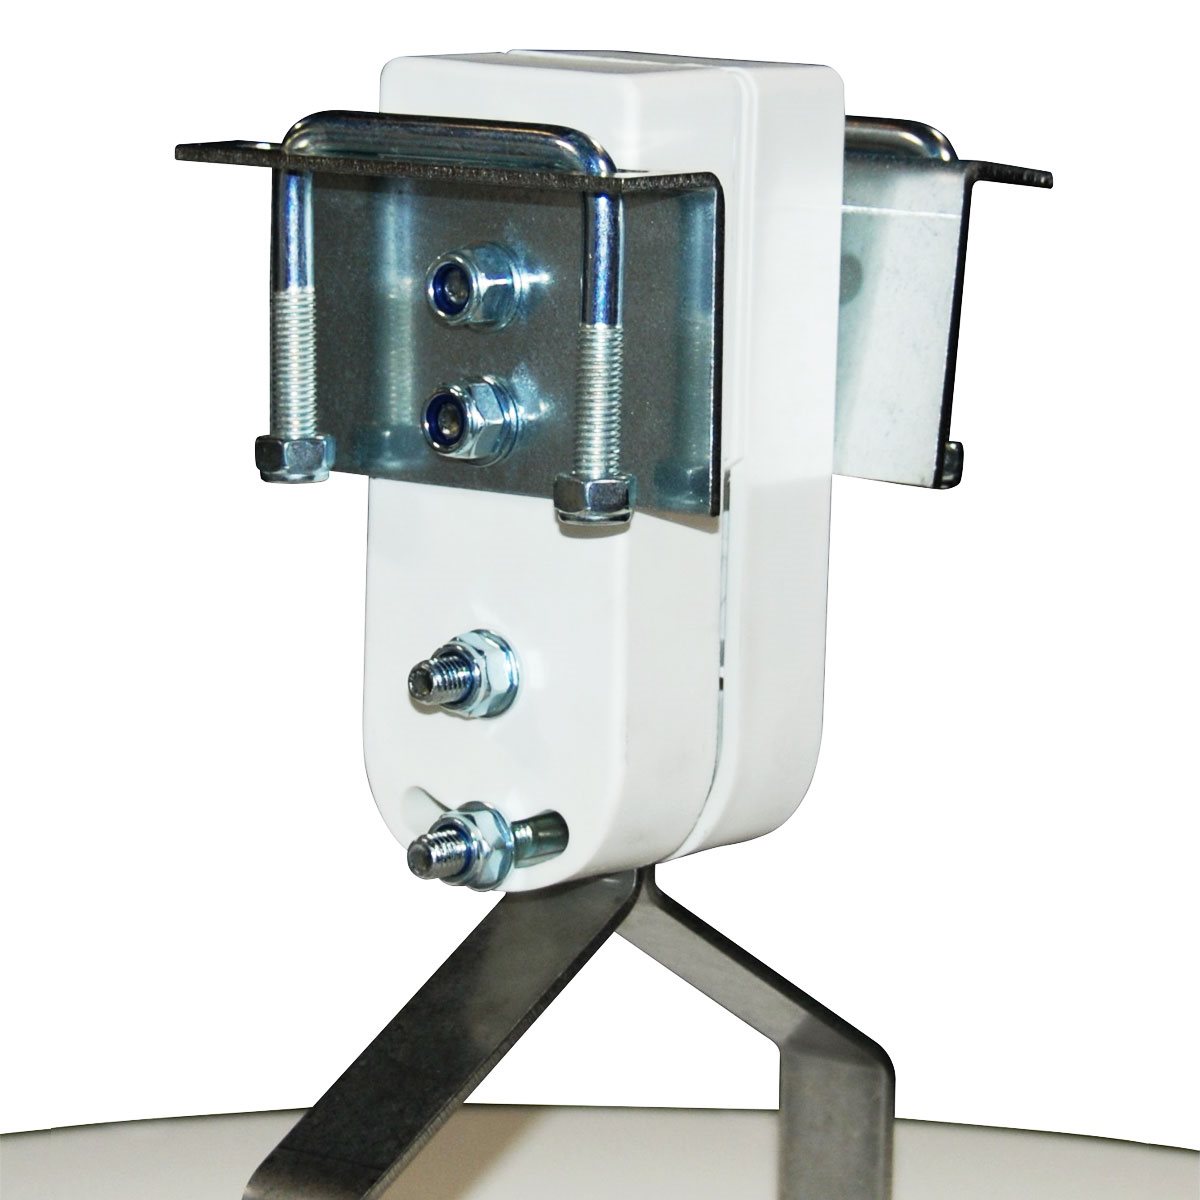 Product Image:Support de montage optionnel pour ventilateur multiple Vostermans